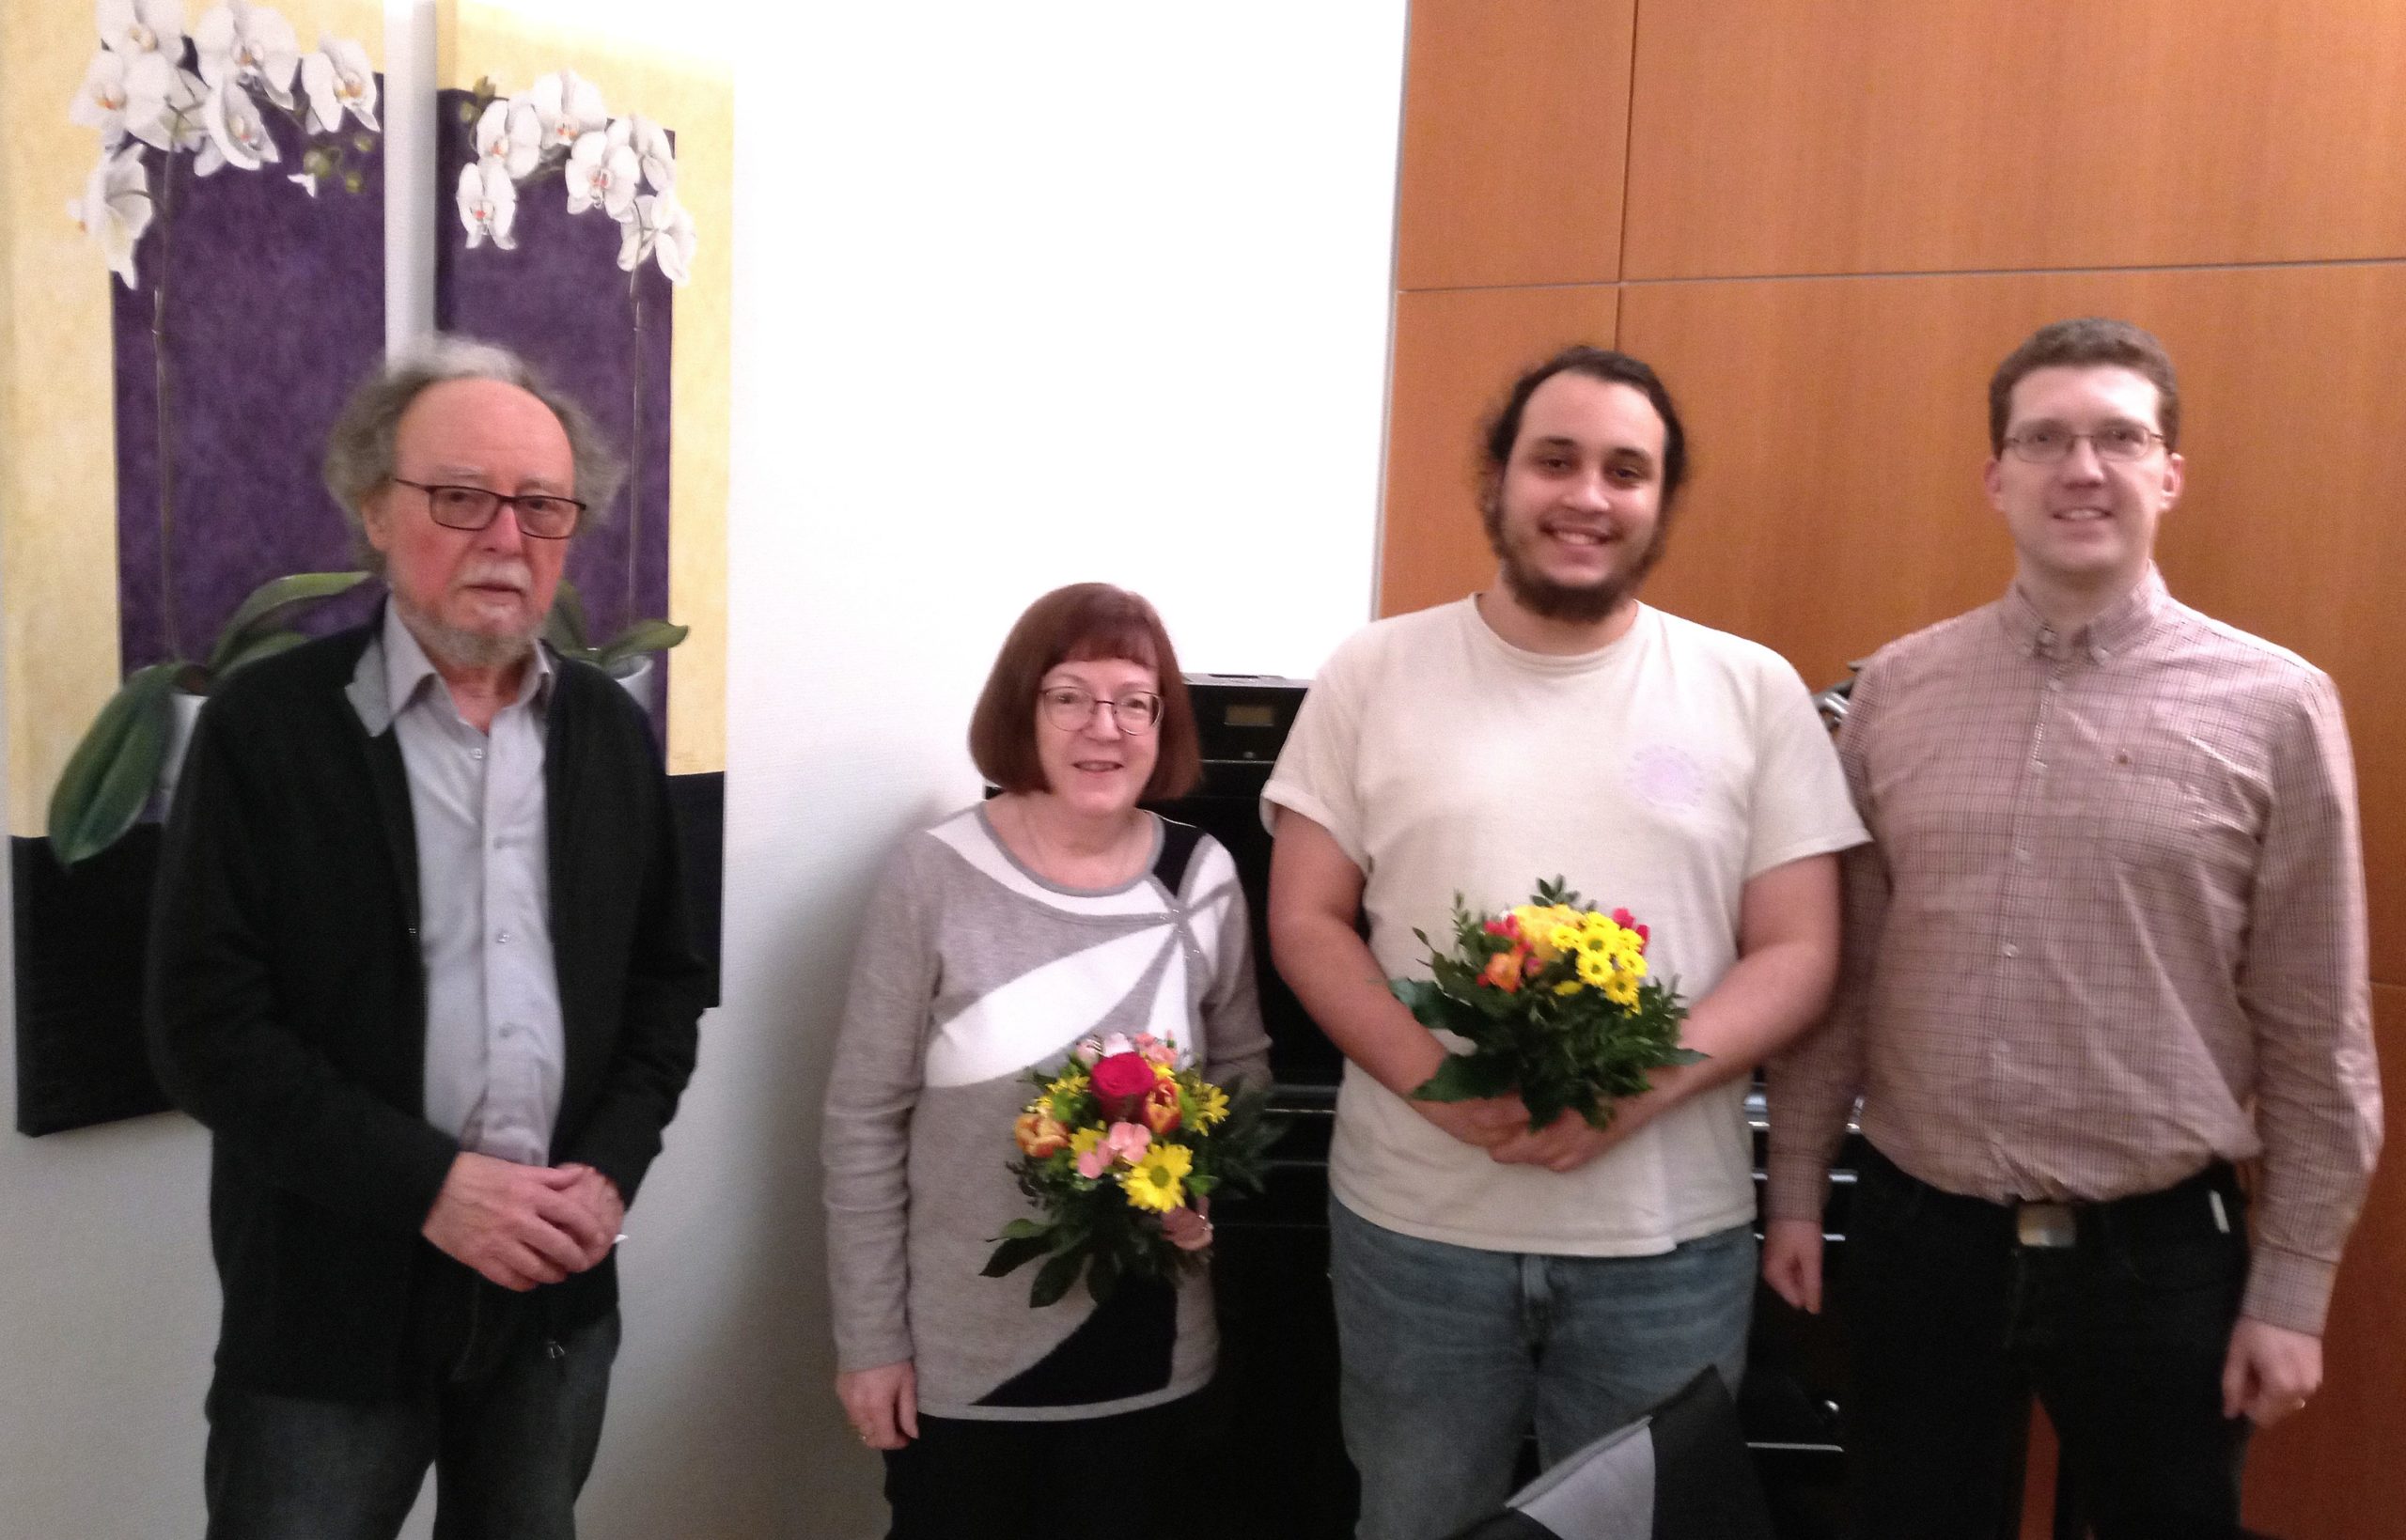 Sie sehen von links nach rechts: Heinz Michael Merkel, Kreisschatzmeister, Gabriele Mehr, Abdellilah Lemkaddem und den Kreisvorsitzenden Thomas Völker. Gabi Mehr und Adbi Lemkaddem halten Blumensträuße in der Hand.